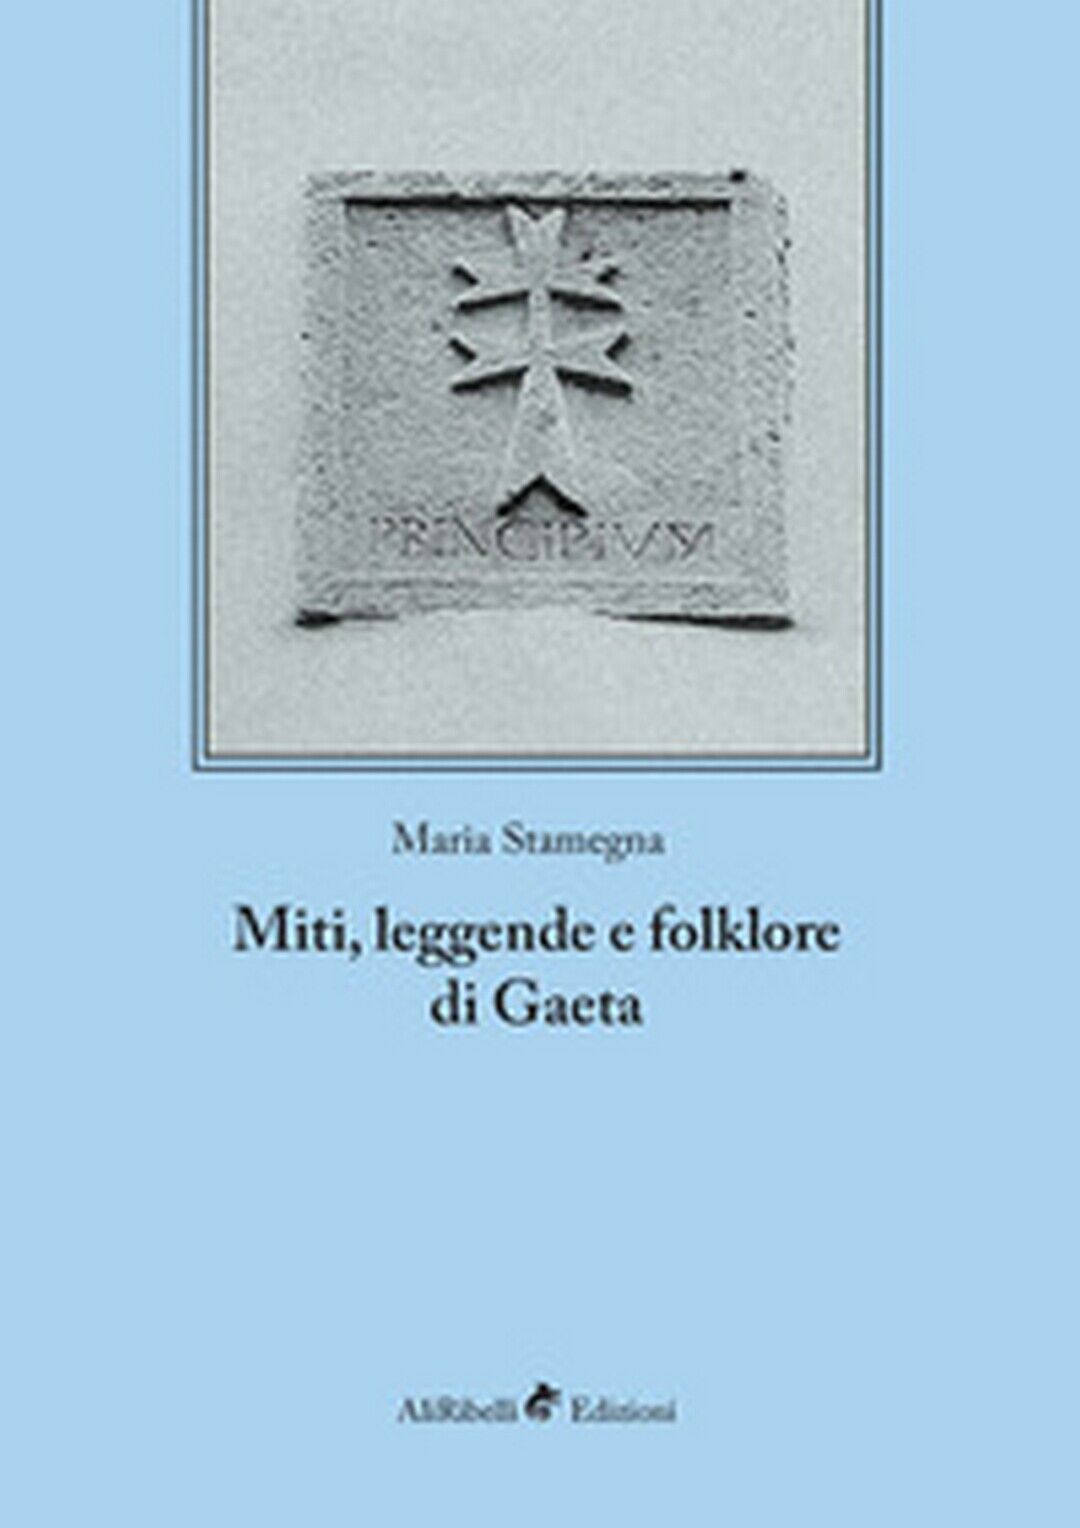 Miti, leggende e folklore di Gaeta, di Maria Stamegna,  2018,  Ali Ribelli Ed. libro usato